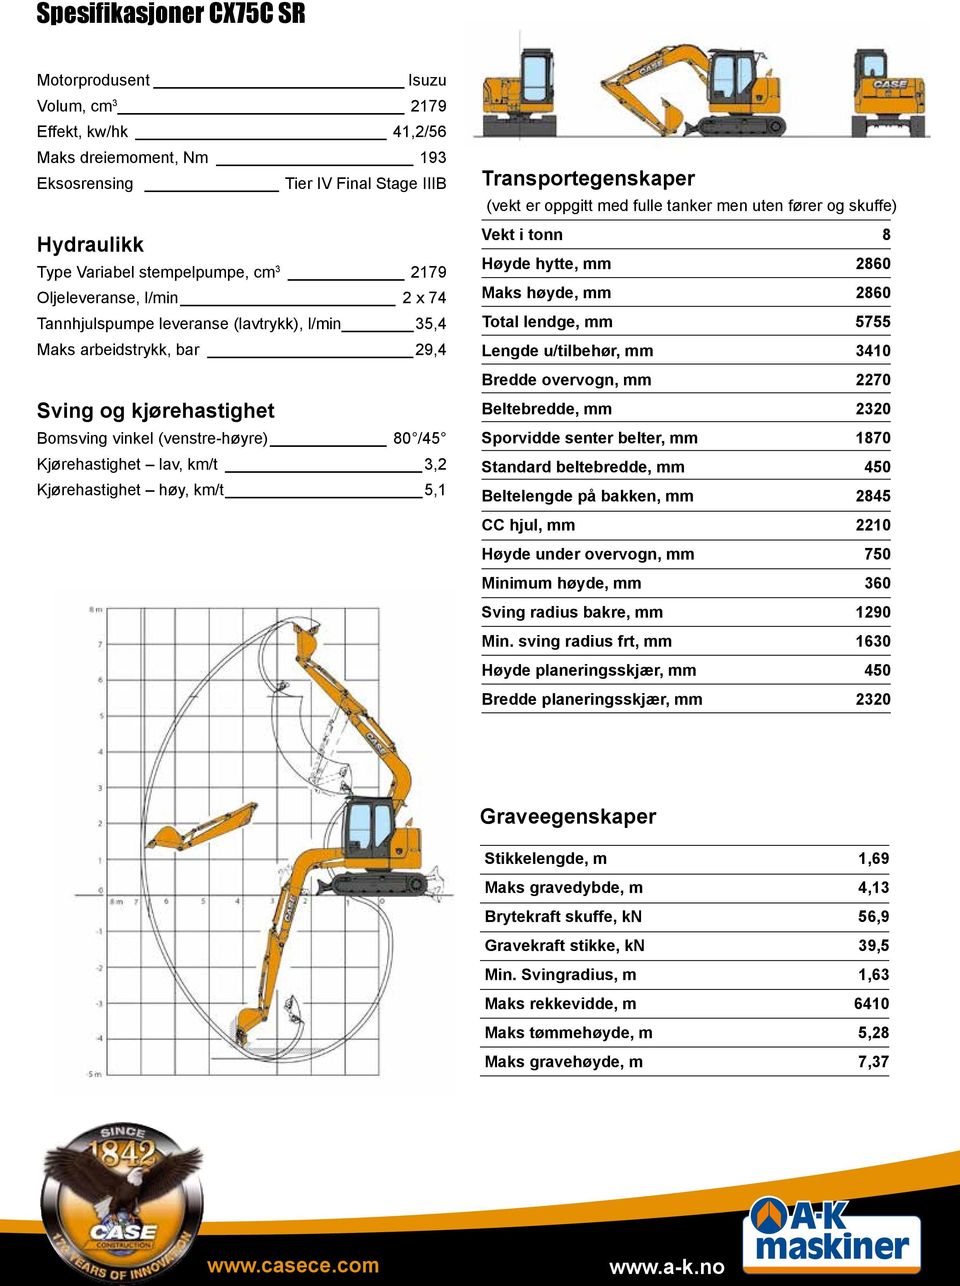 CX75C SR TIER SPESIFIKASJONER CASE INTELLIGENT HYDRAULIKK-SYSTEM MED  OVERLEGEN DRIVSTOFFBESPARELSE - PDF Gratis nedlasting